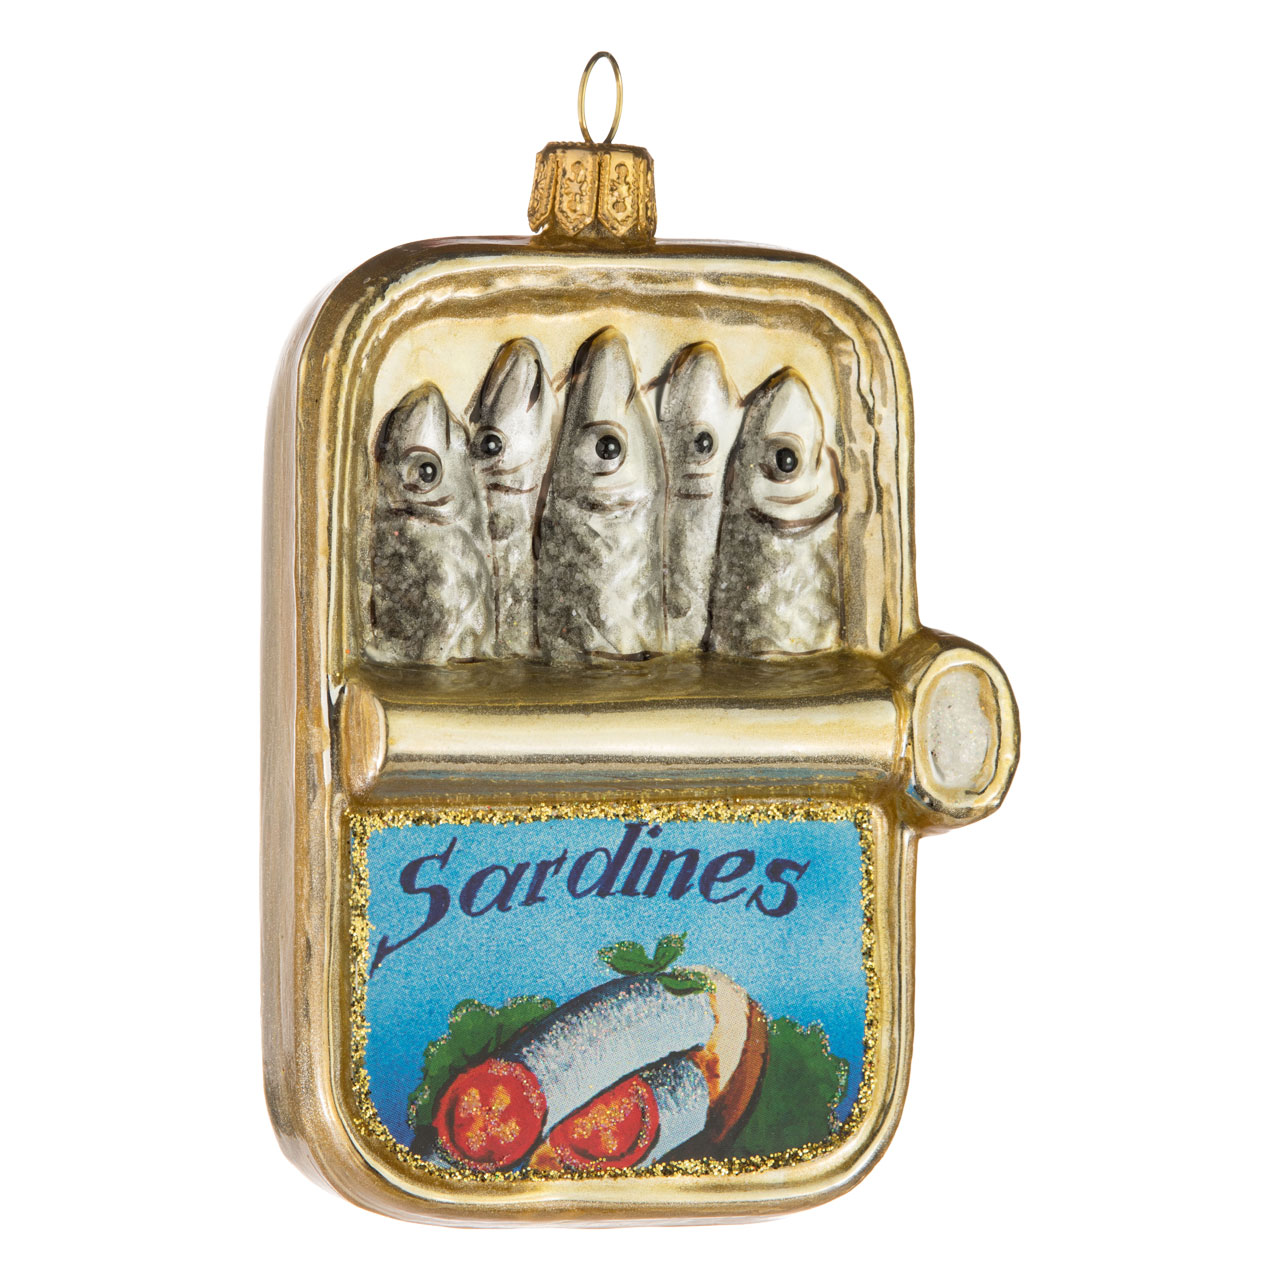 Sardine tin